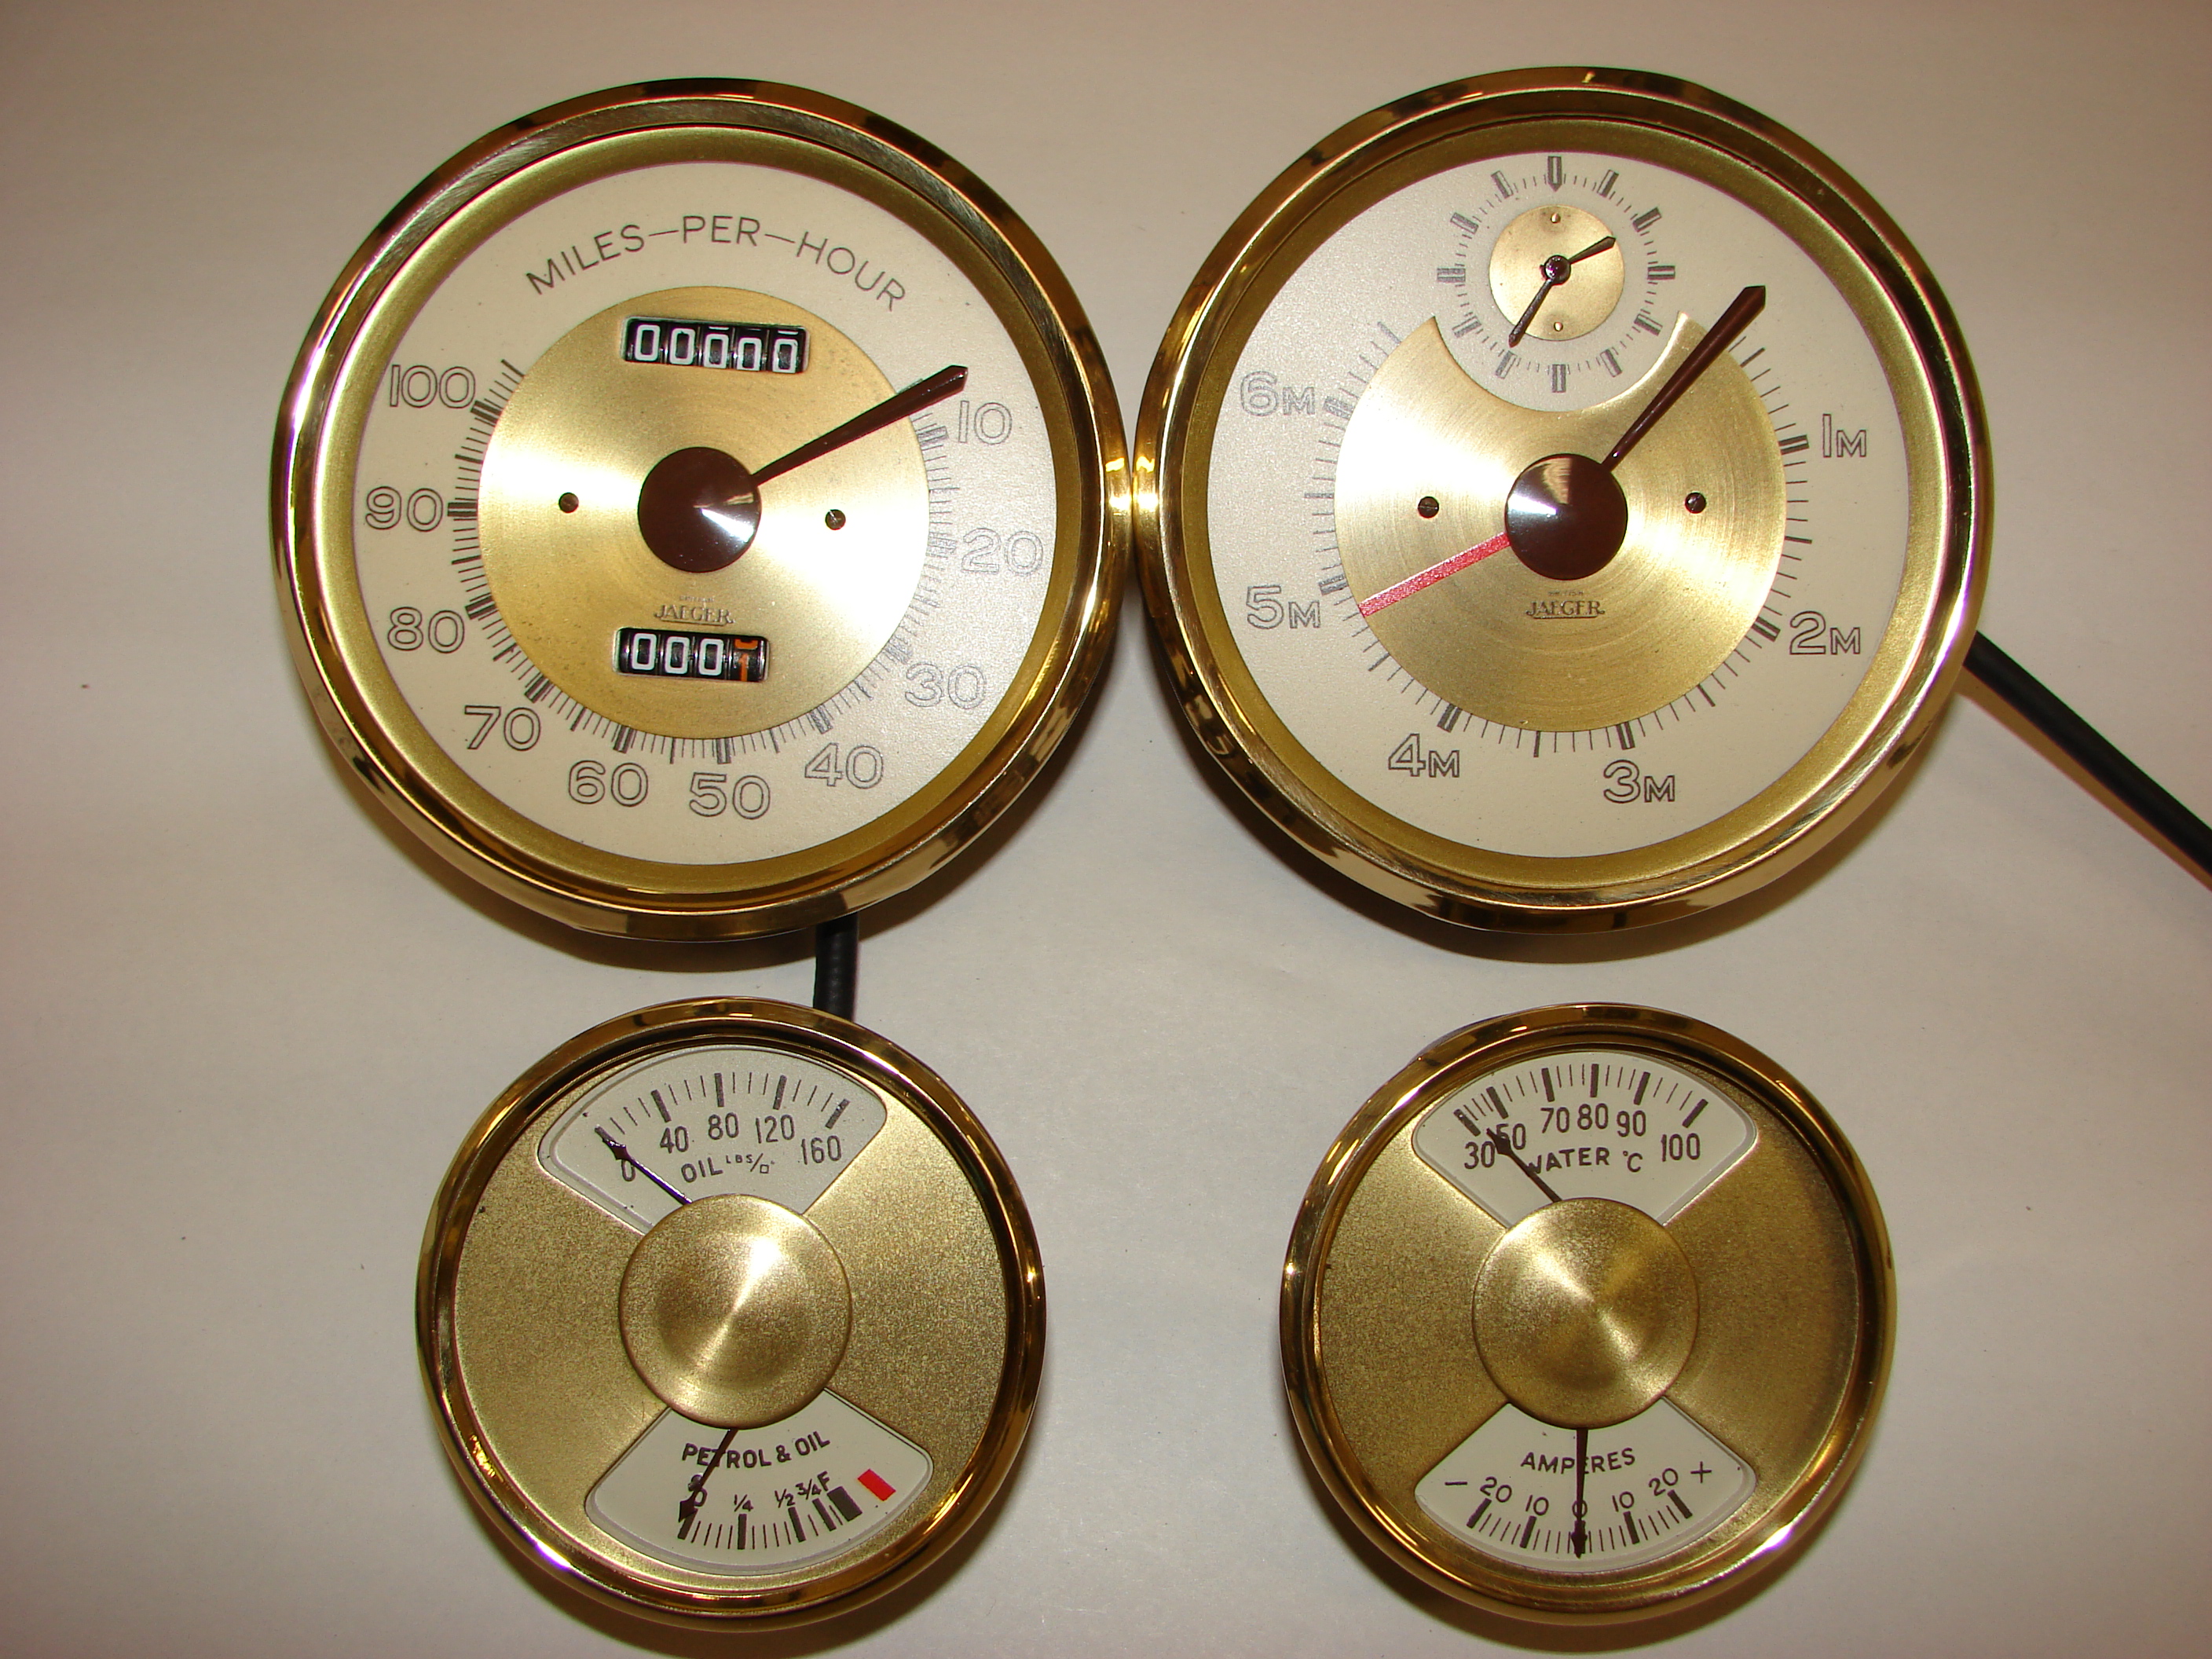 Golden speedometers